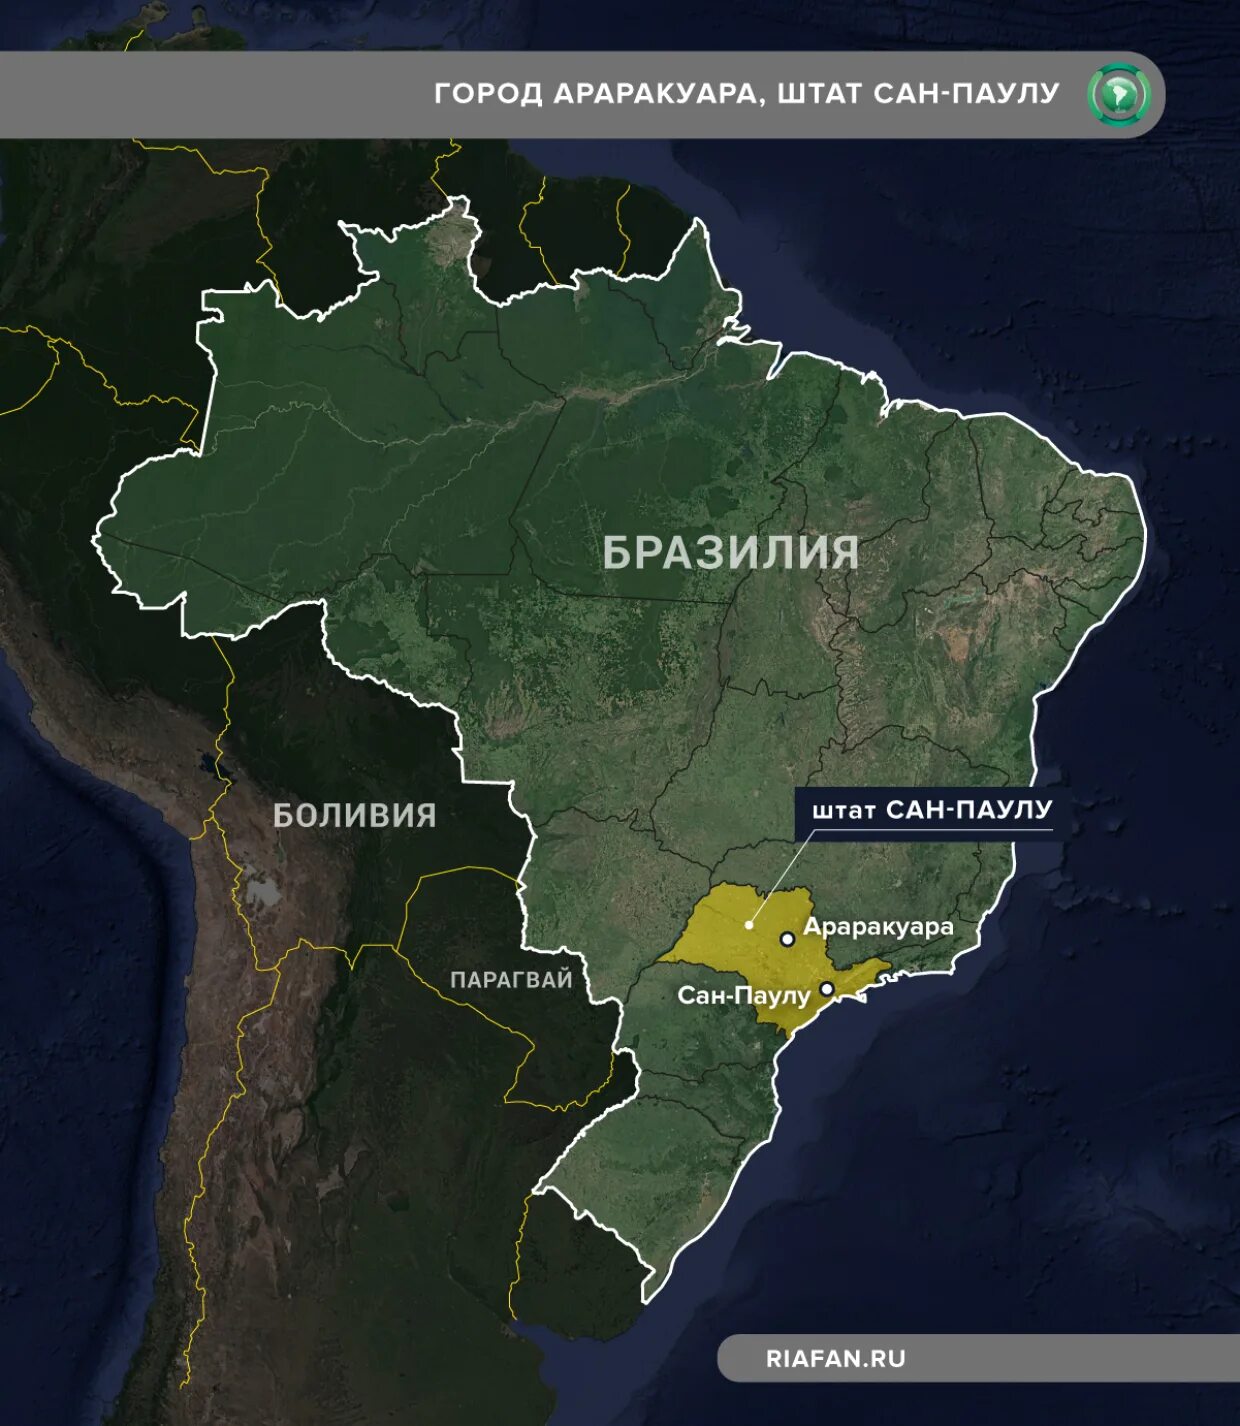 Сан-Паулу Бразилия на карте Бразилии. Штат Сан Паулу Бразилия на карте. Сан-Паулу город в Бразилии на карте. Бразилия на карте Бразилии. Описание бразилии по картам